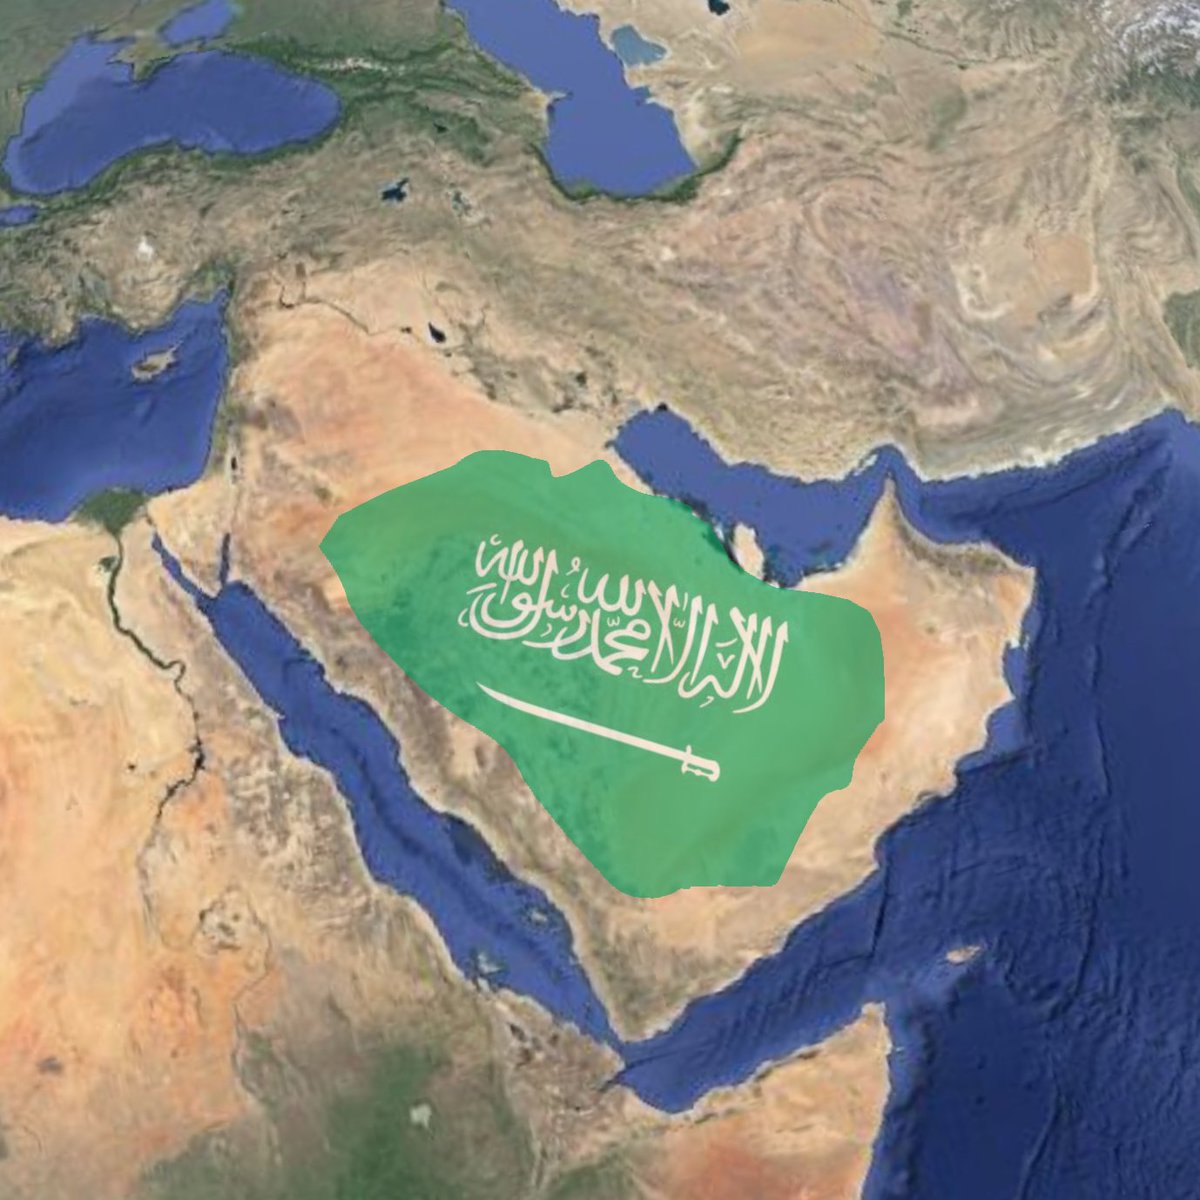 خريطه حكم ال سعود حفظهم الله،
قبل تأسيس المملكة، (الخريطه غير دقيقه)